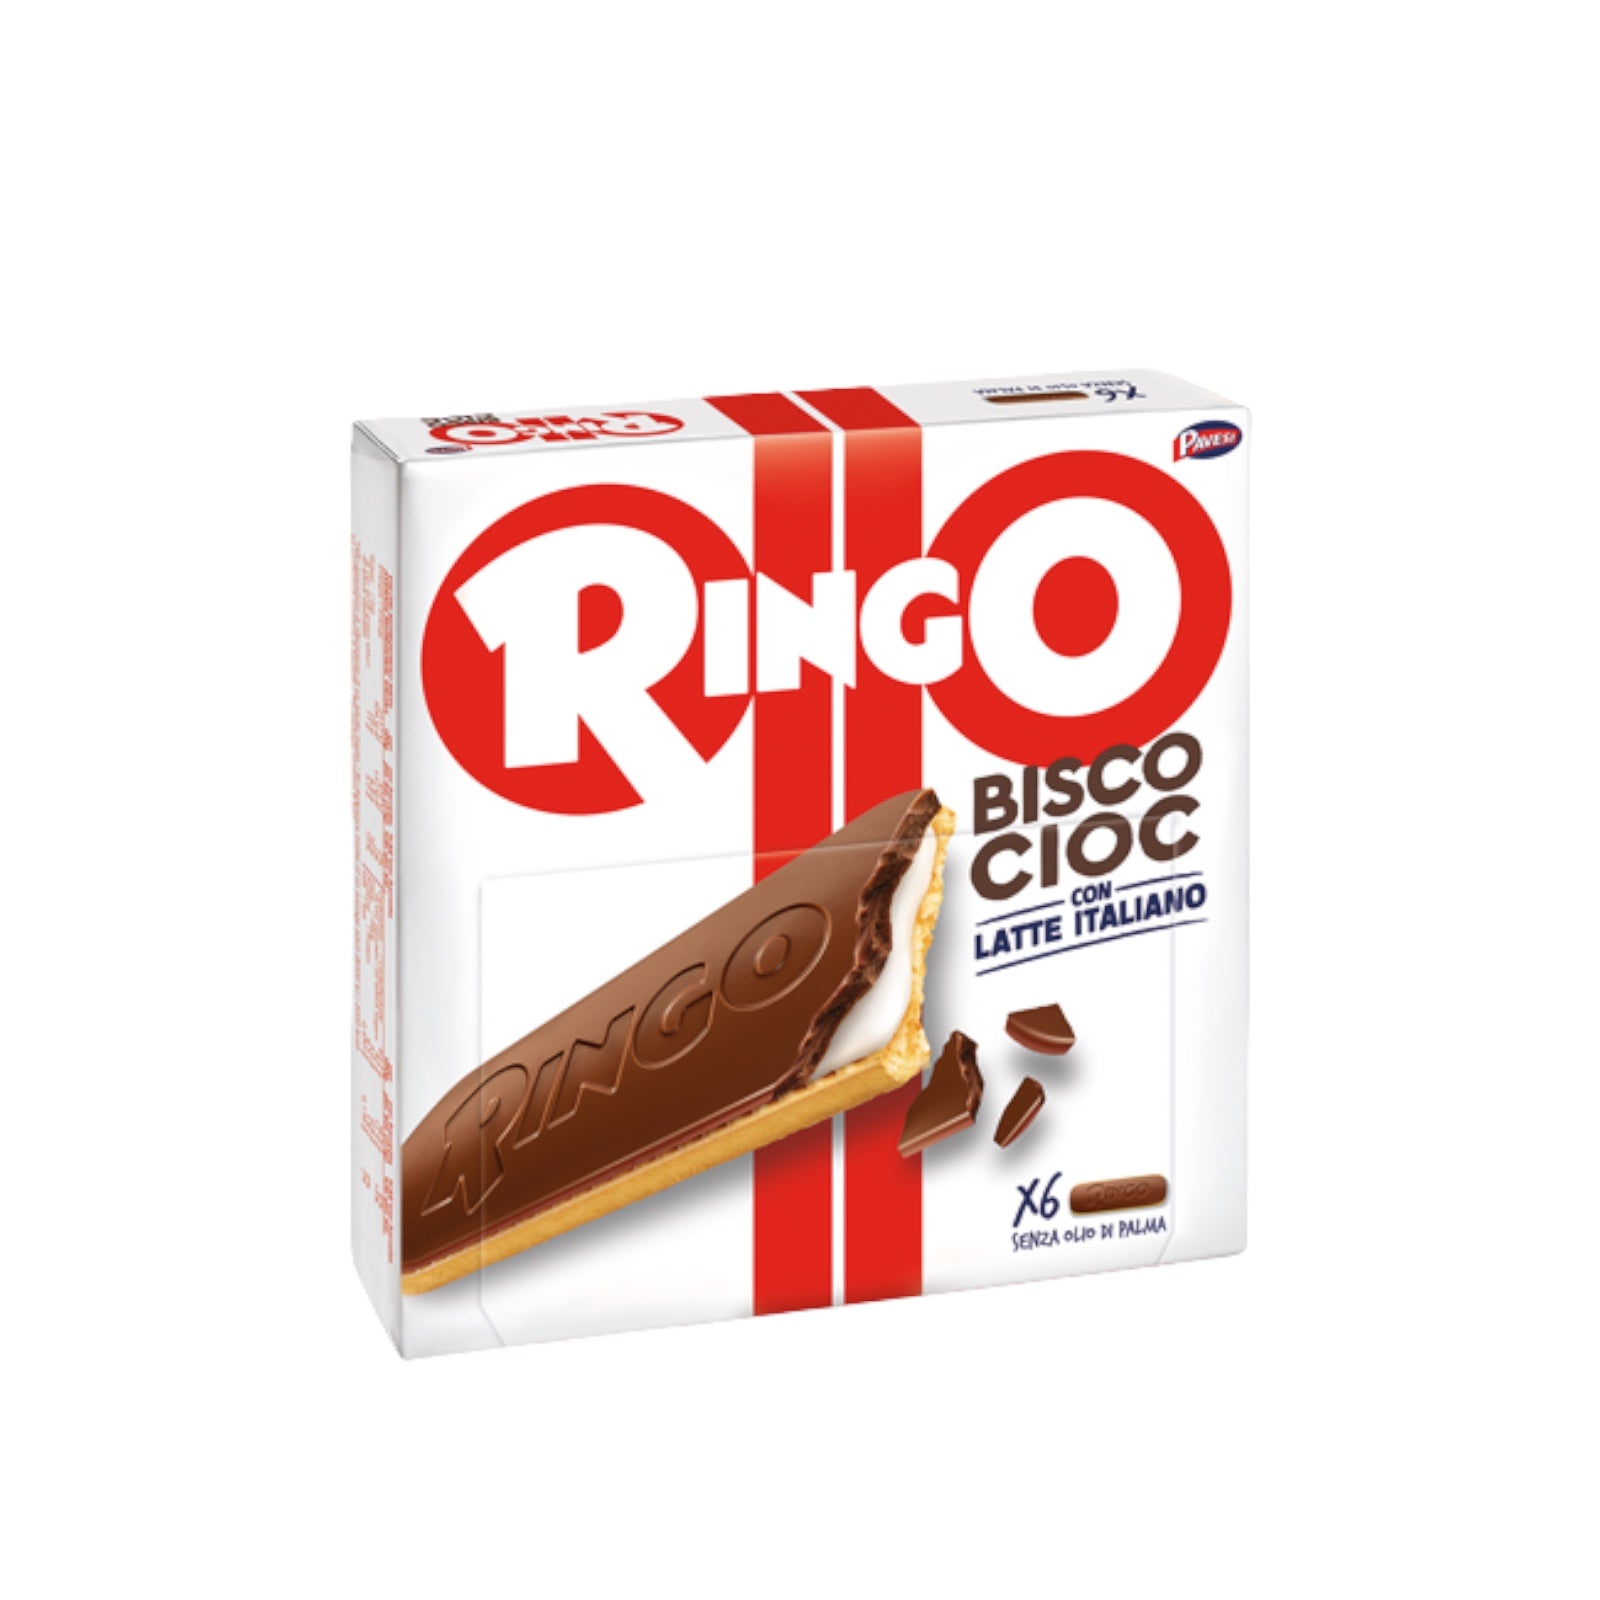 Ringo Bisco Cioc, With Milk Cream